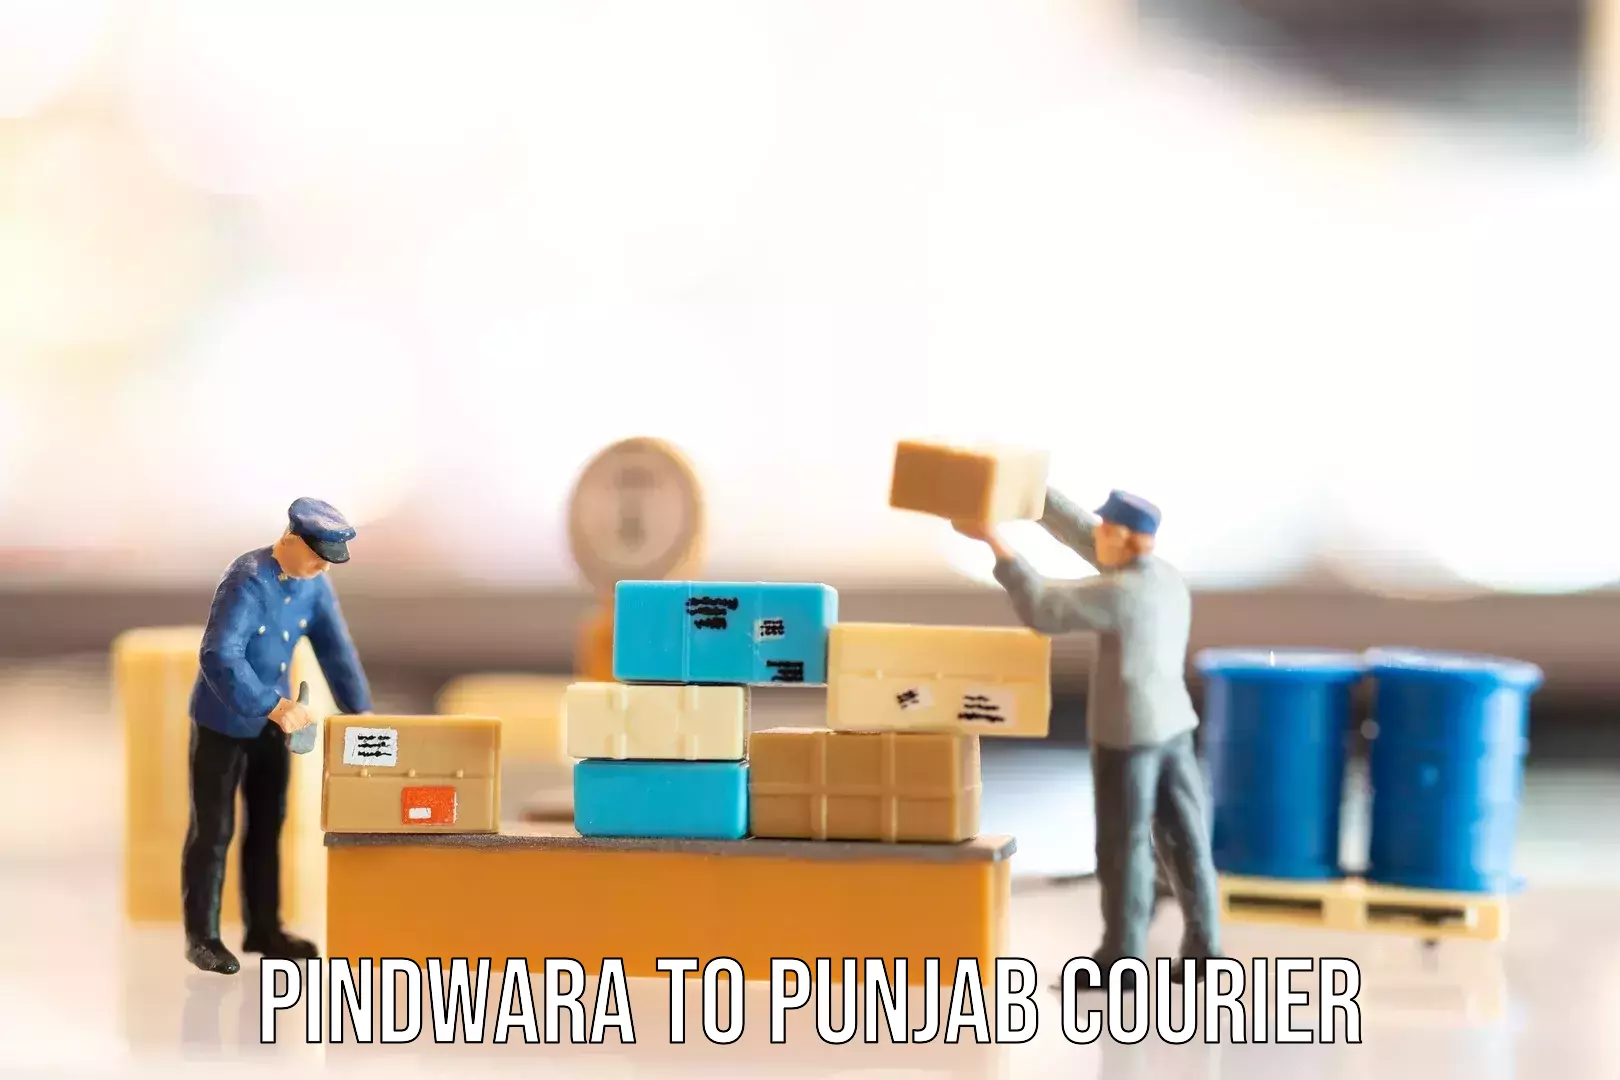 Global baggage shipping Pindwara to Punjab